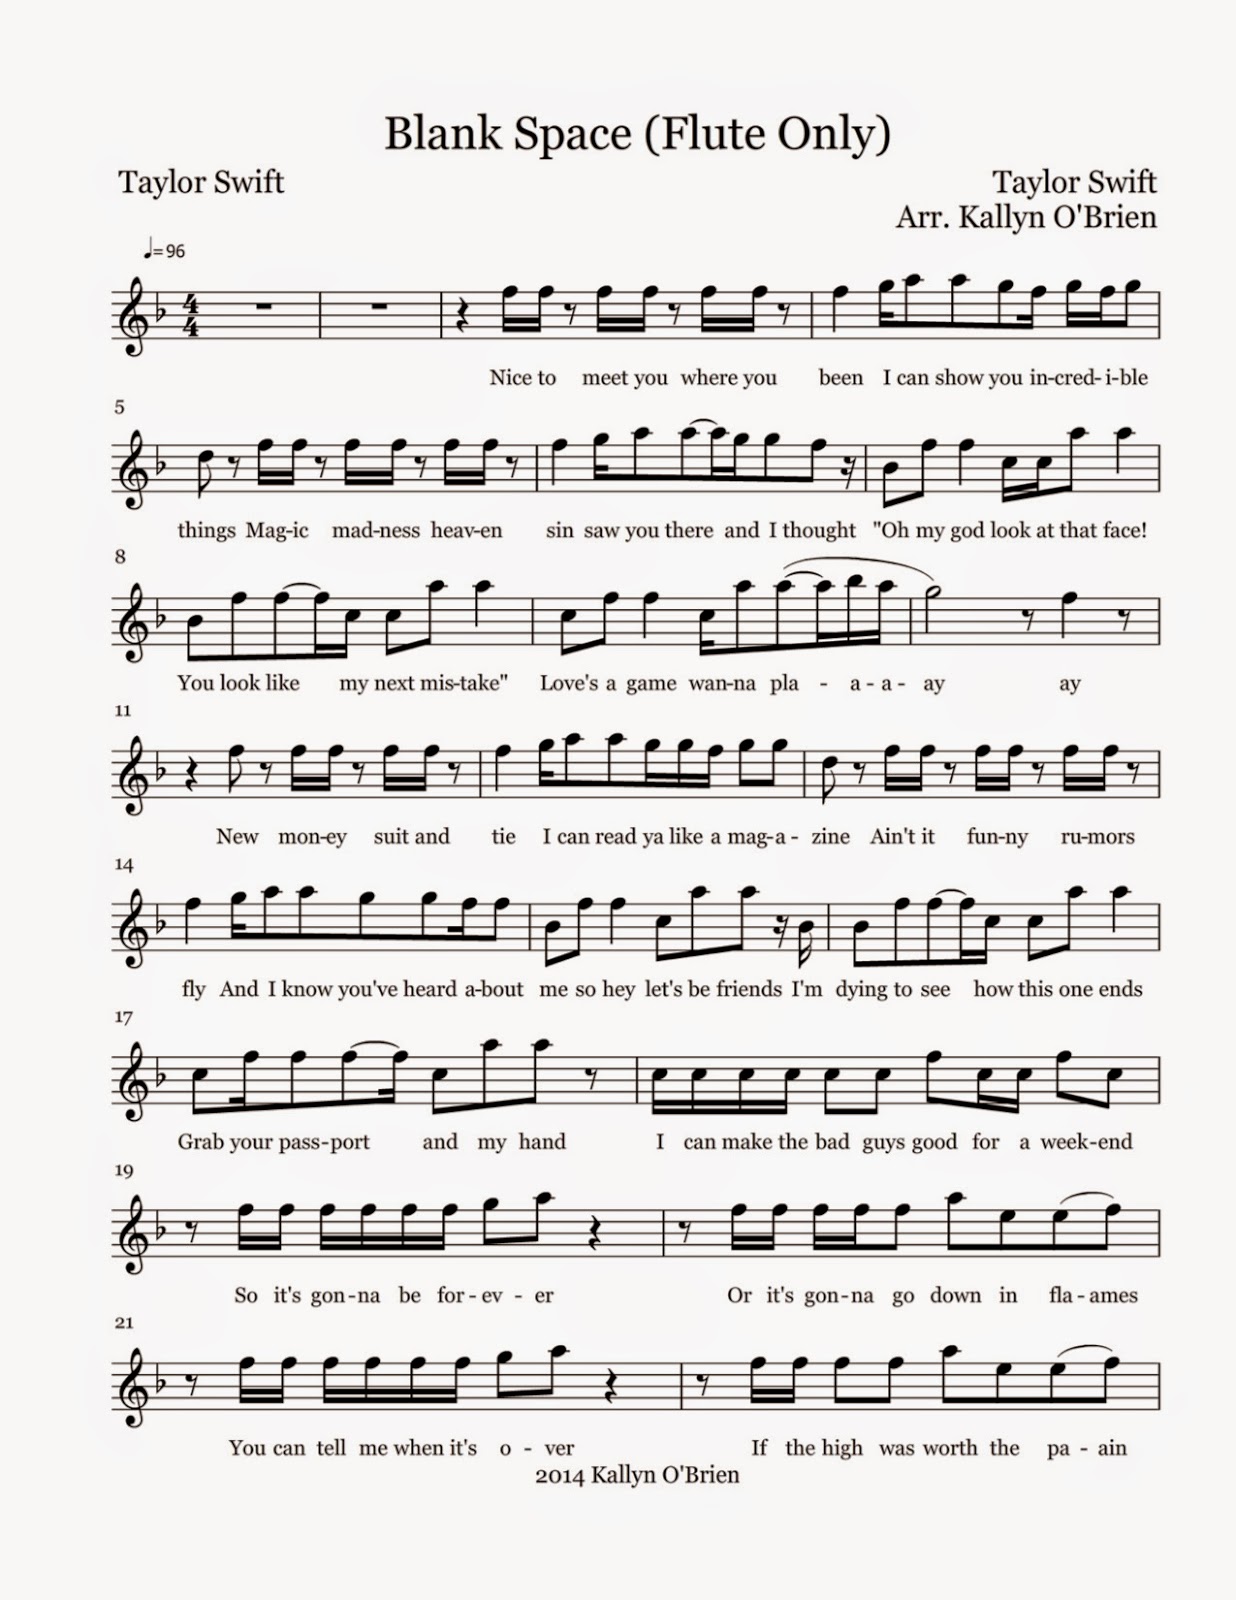 flute-sheet-music-blank-space-sheet-music